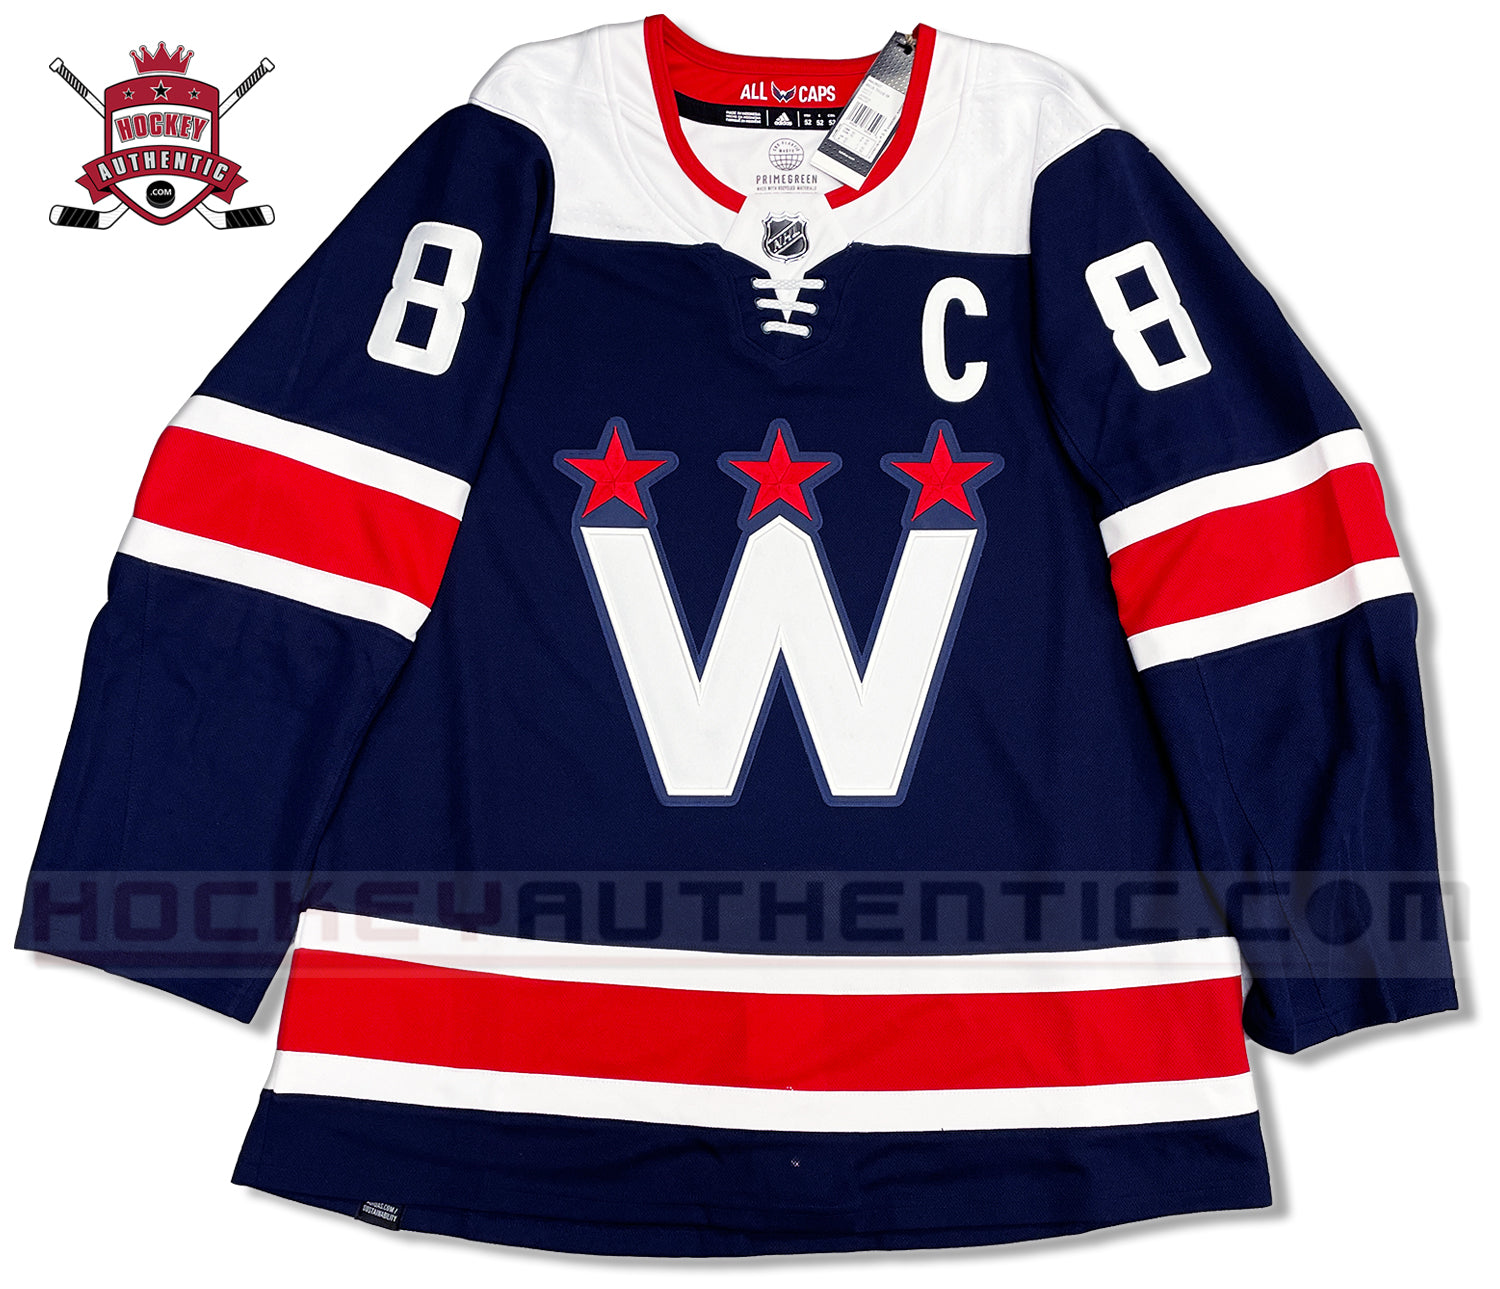 Washington Capitals - 74 Old Time Hockey - Long Sleeve Shirt - Large - Blue  -Nex